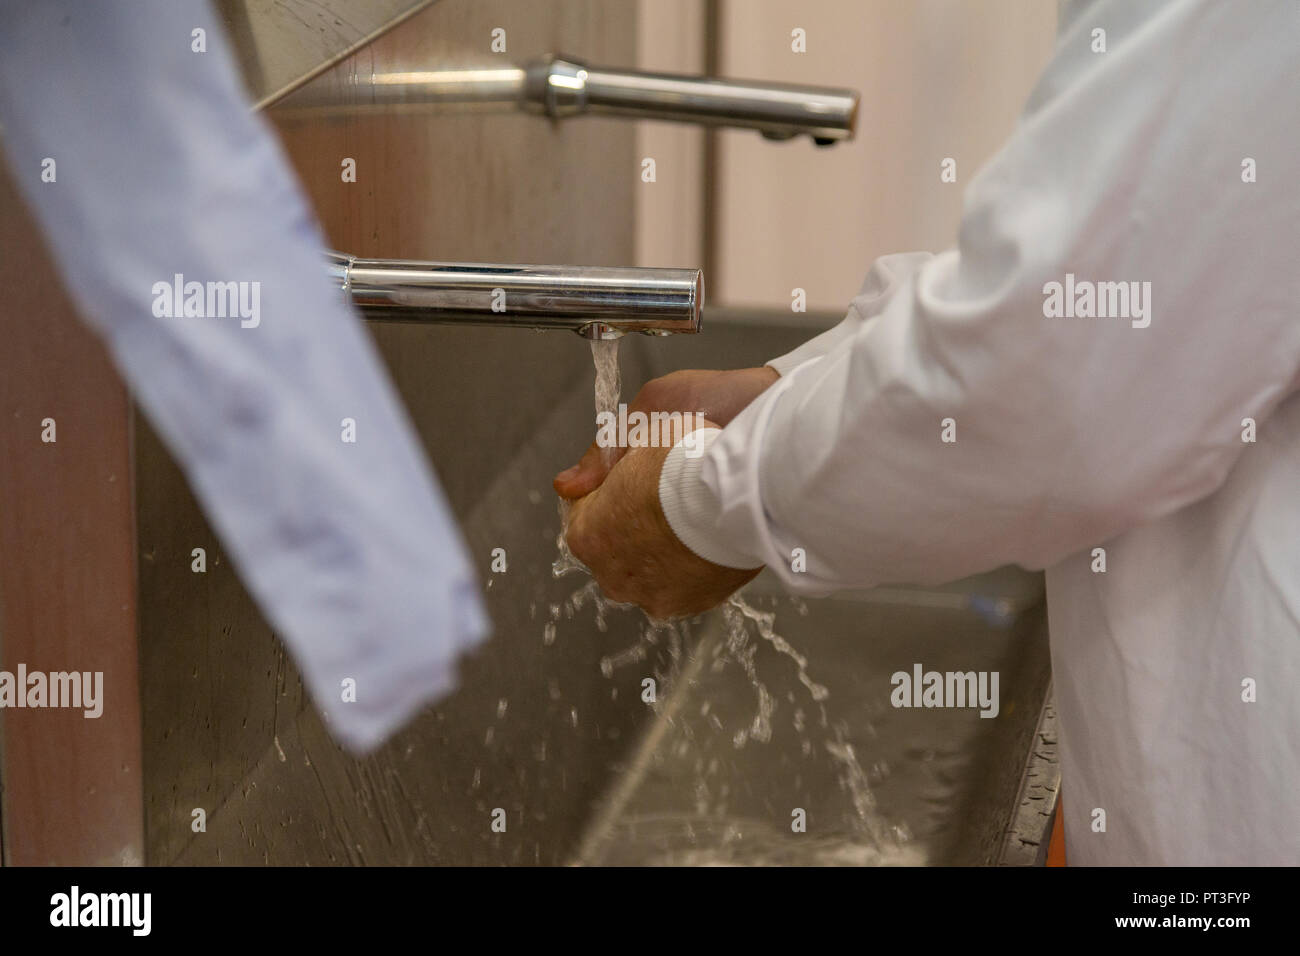 Modernas instalaciones para lavarse las manos en compañía de producción de alimentos del Reino Unido Foto de stock